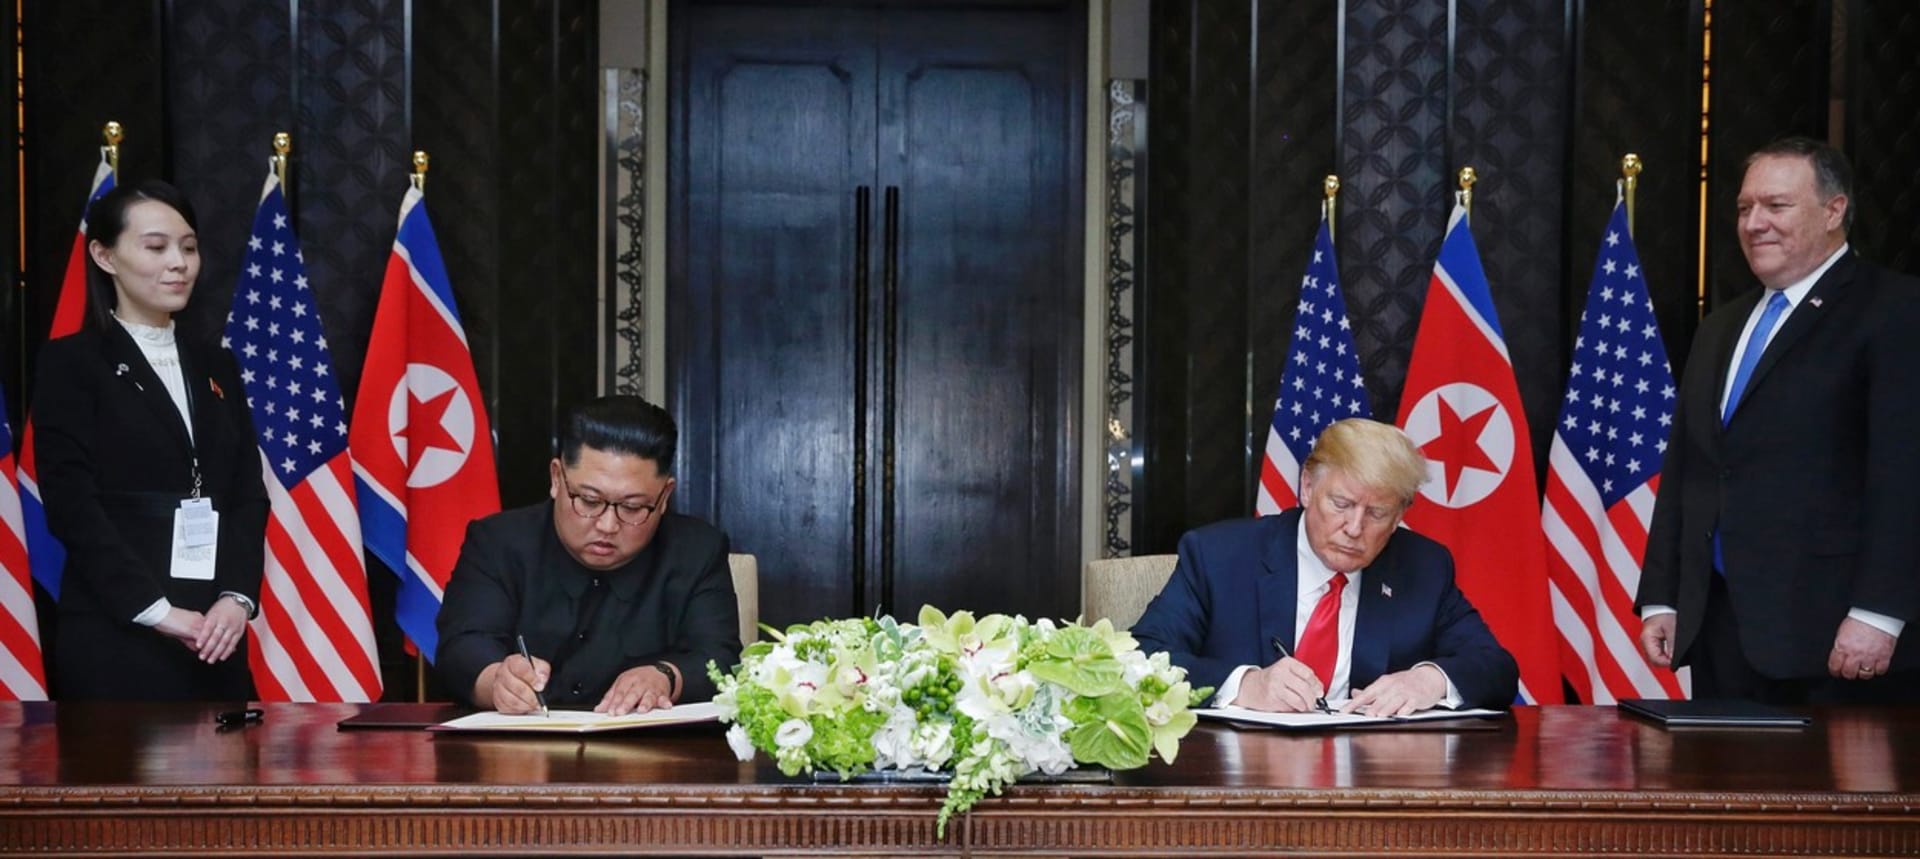 Summit Kim Čong-una a Donalda Trumpa v červnu 2018. Kim Jo-čong a ministr zahraničních věcí USA Mike Pompeo přihlížejí podpisu dohody mezi státníky.